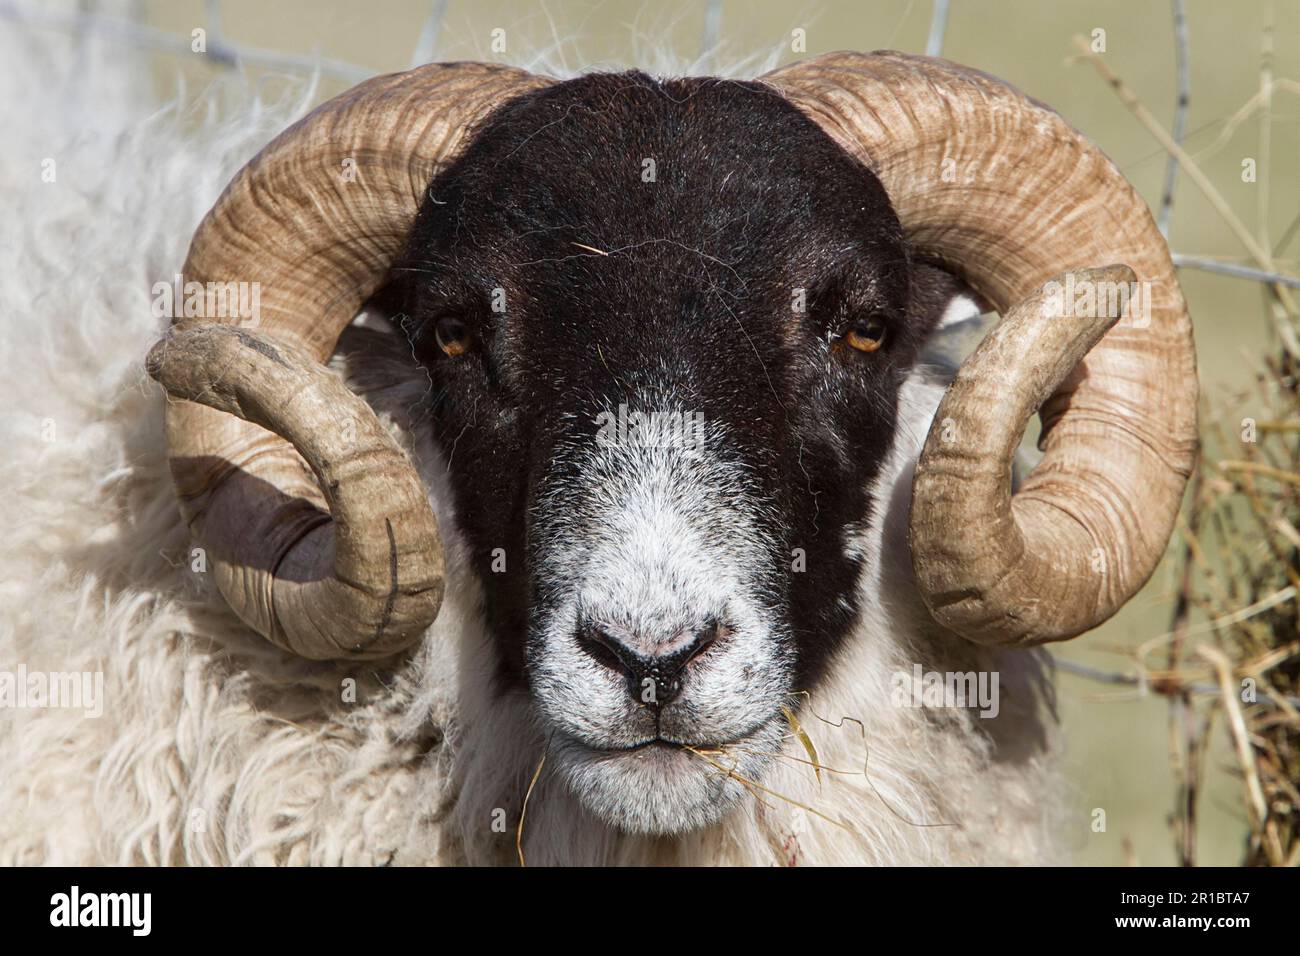 Le Blackface écossais est la race la plus courante de moutons domestiques au Royaume-Uni. Cette race robuste et adaptable se trouve souvent dans des endroits plus exposés Banque D'Images